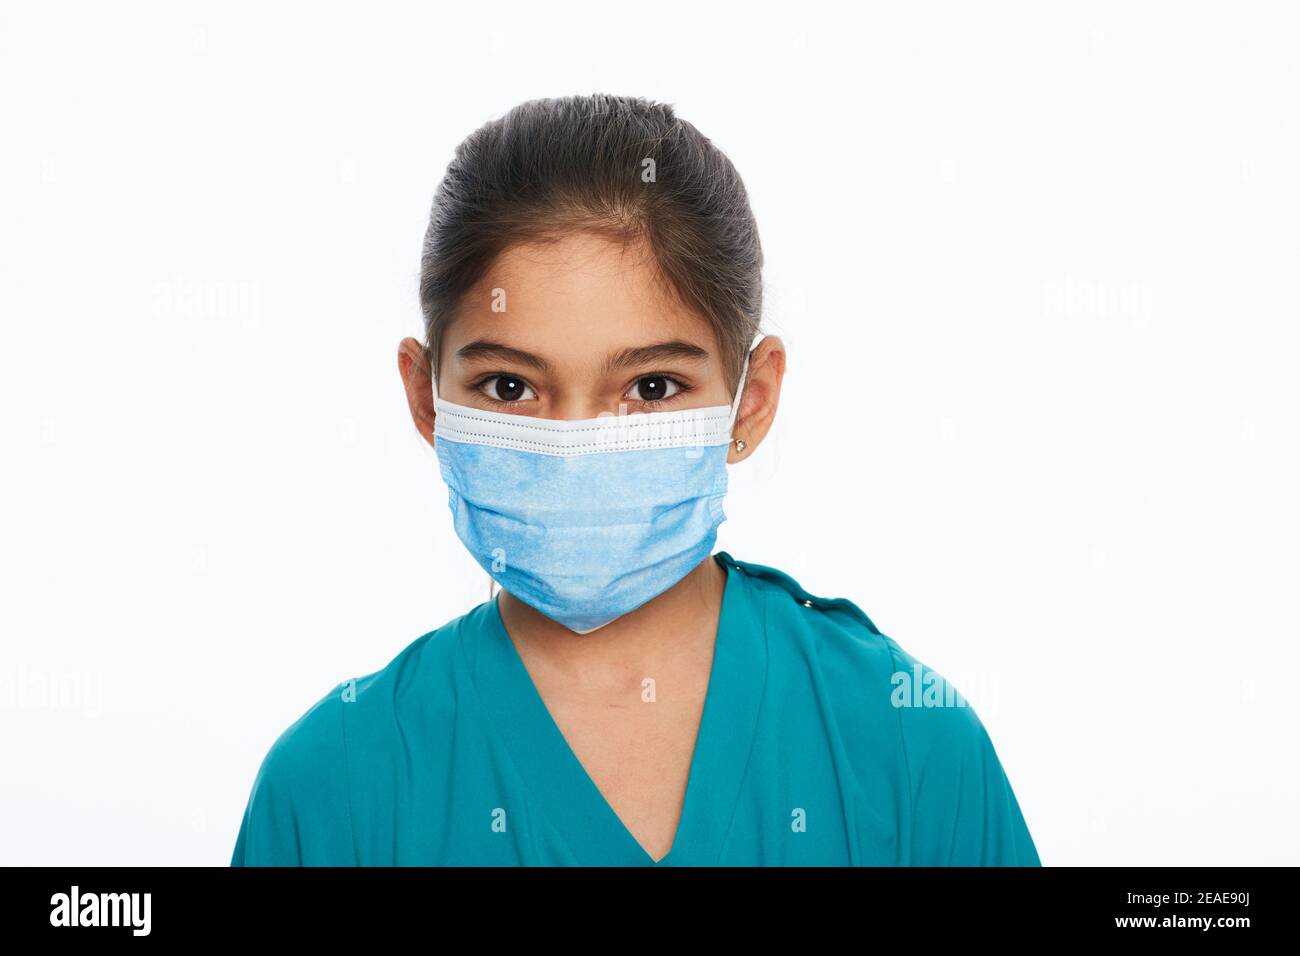 Asiatische Kind Mädchen mit einem chirurgischen Schutz Gesichtsmaske während einer globalen Pandemie, isoliert auf weiß Stockfoto